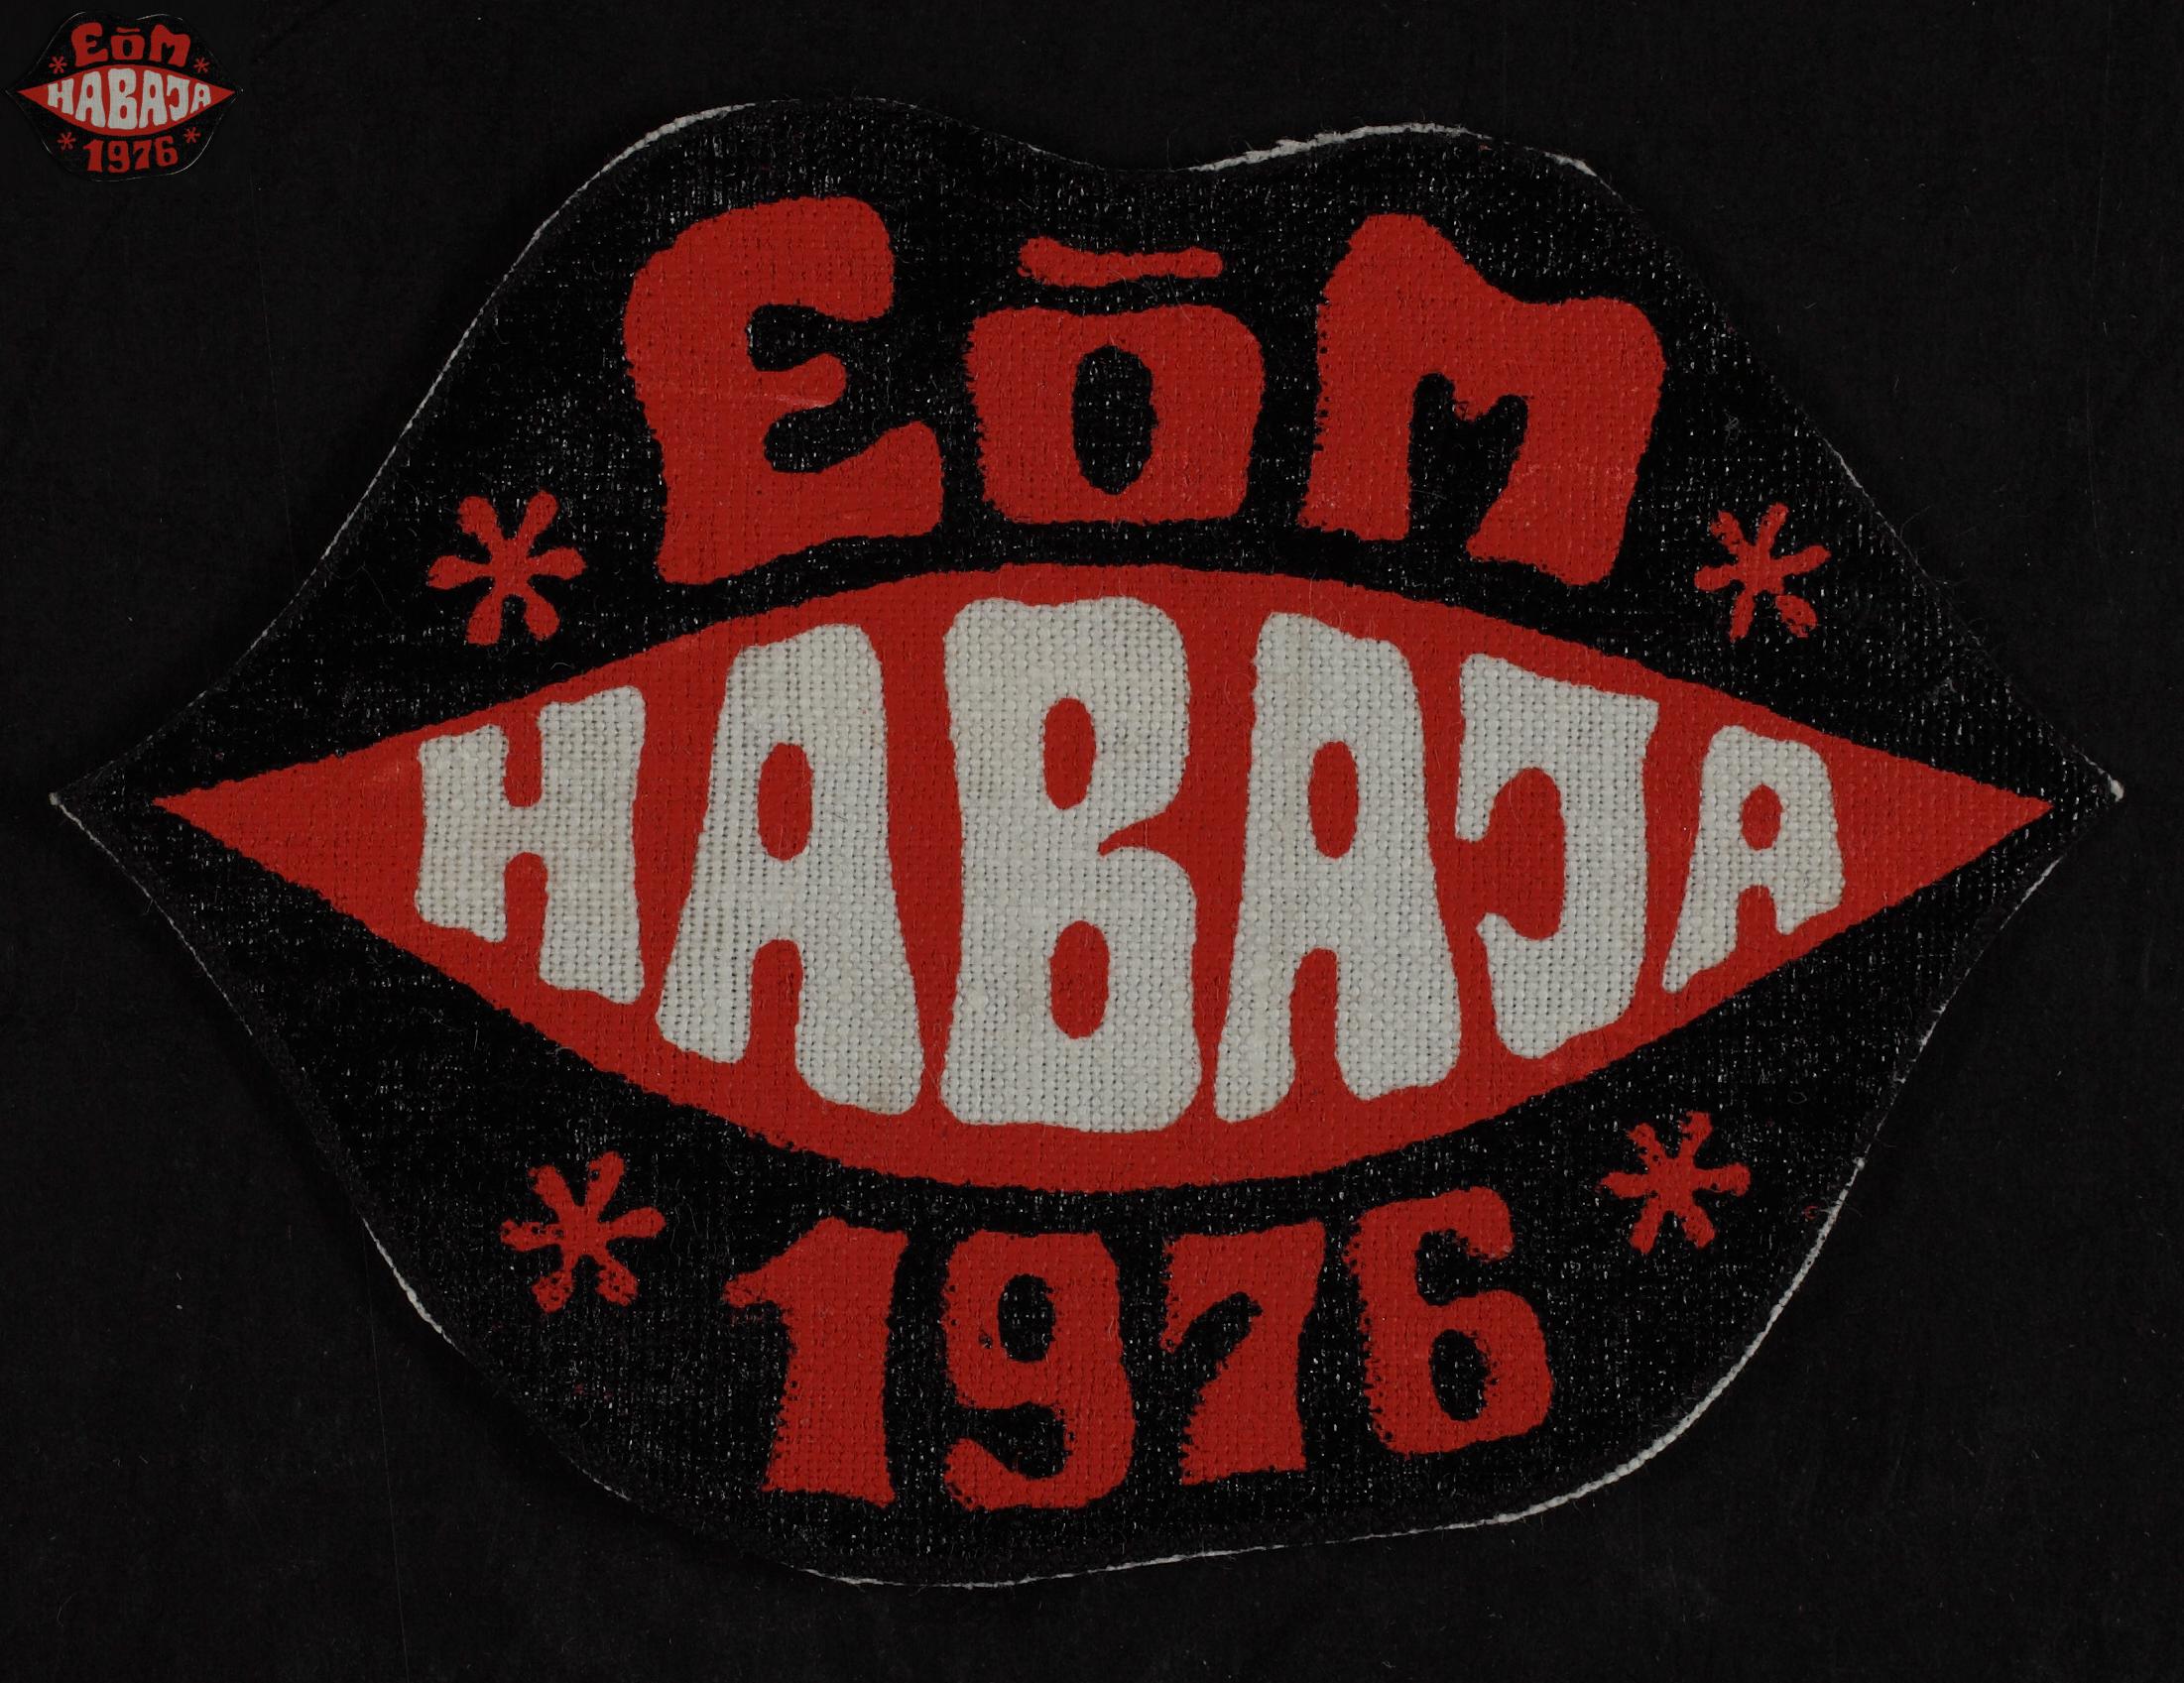 Maleva embleem, Habaja 1976 / Secondary School Students' Building Brigade emblem, Habaja 1976